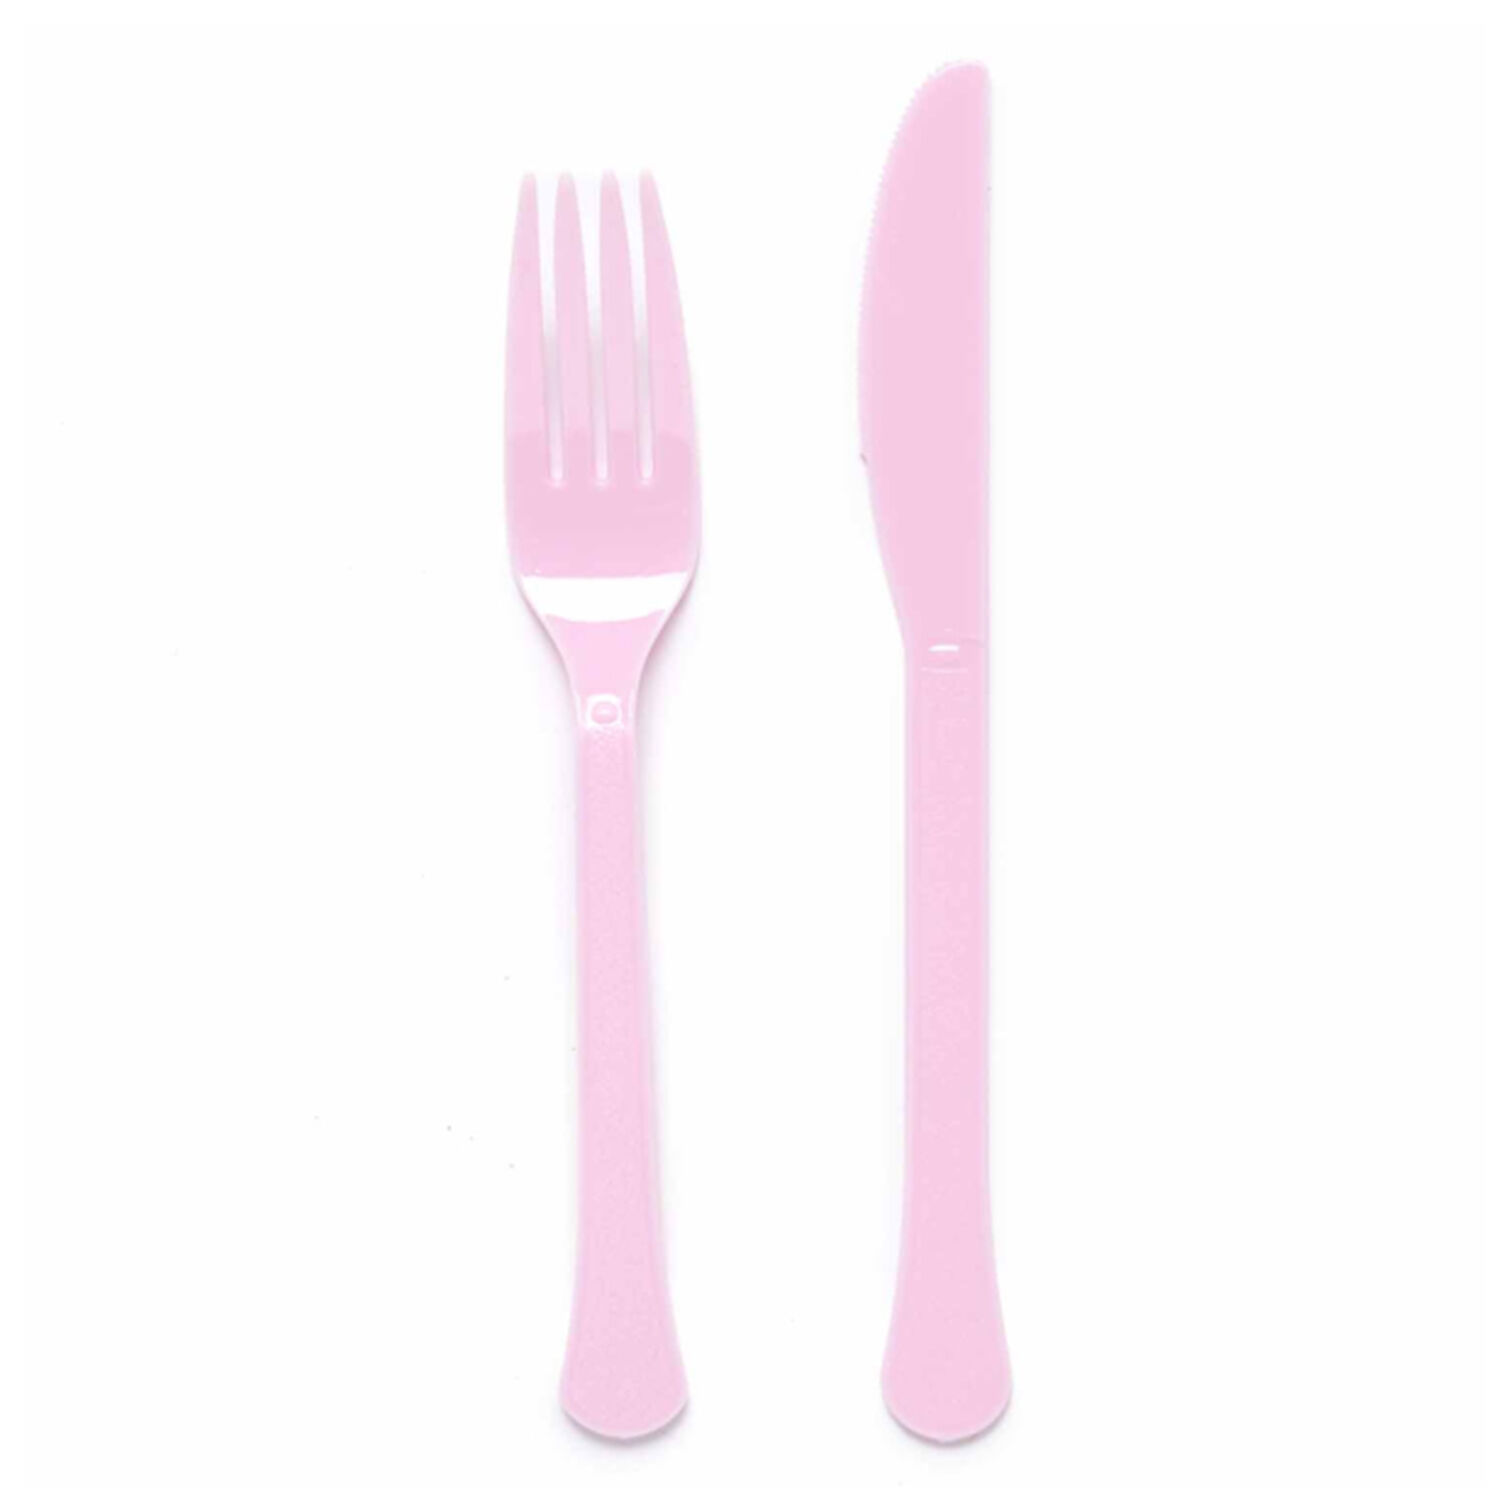 NEU Mehrweg-Besteck-Set Messer und Gabel aus Kunststoff, je 12 Stck, rosa